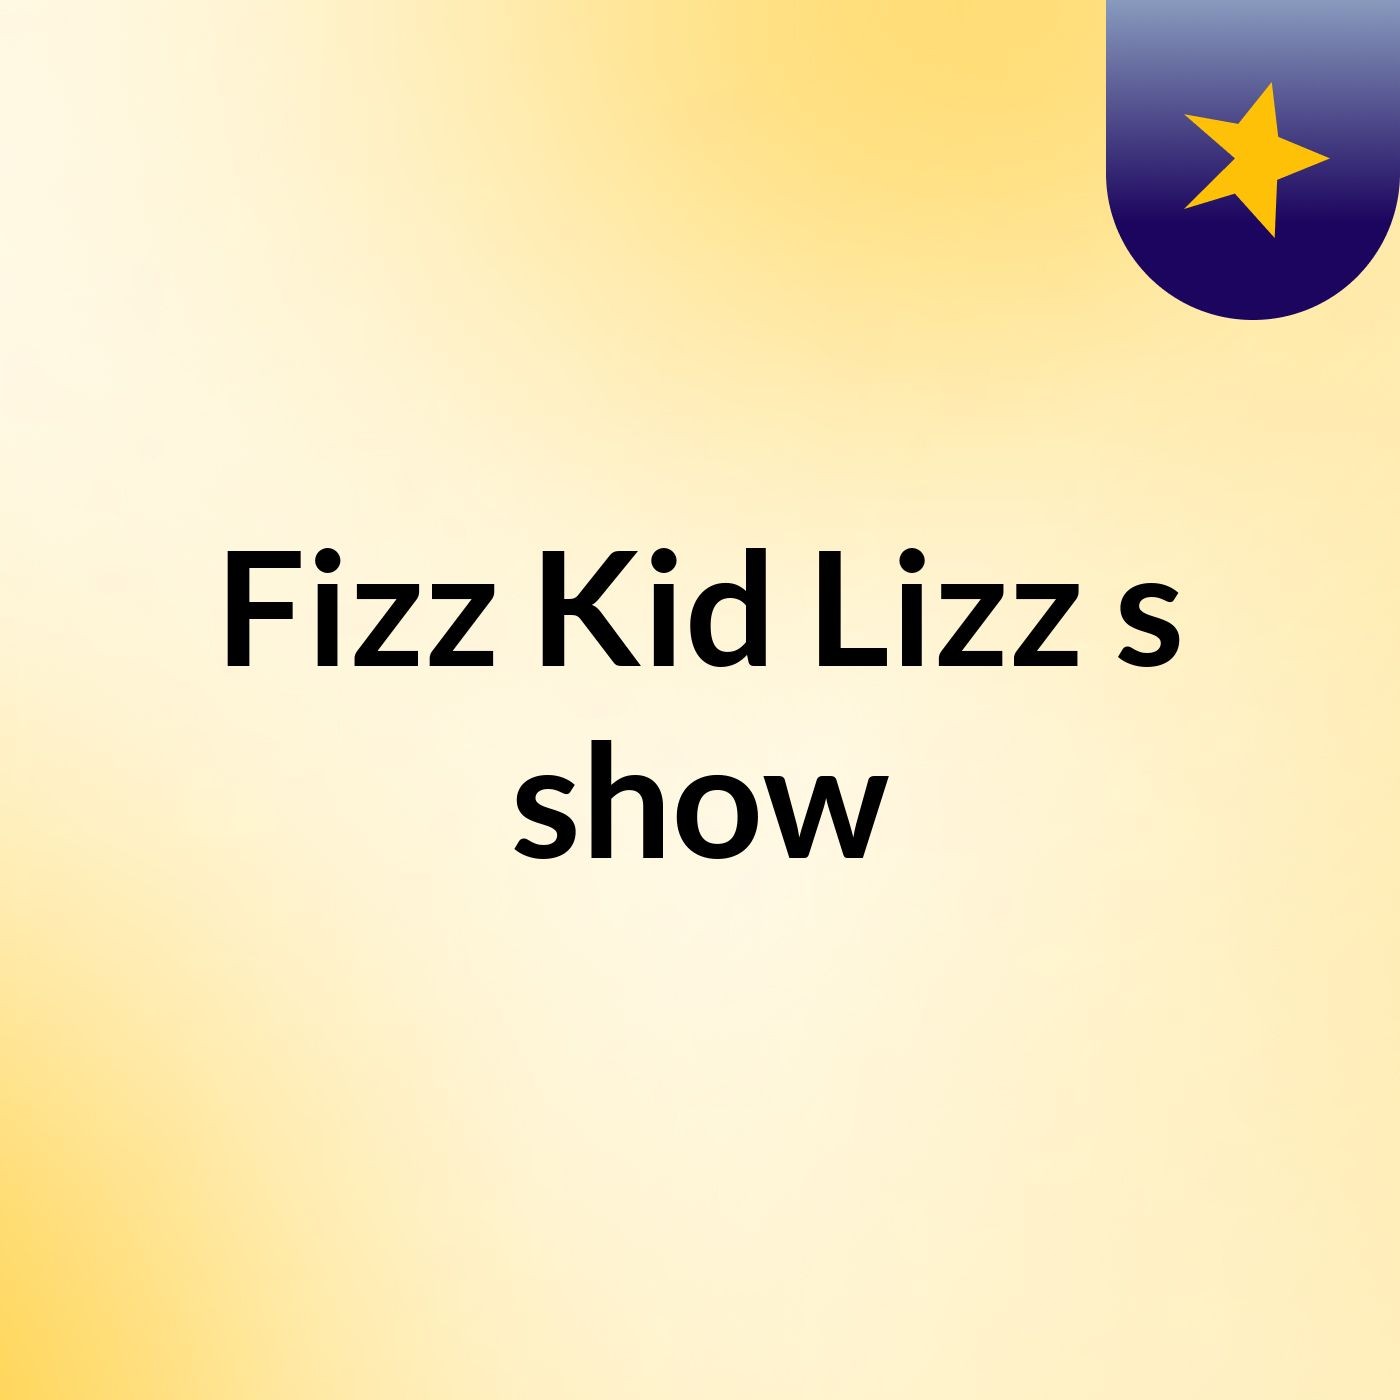 Fizz Kid Lizz's show